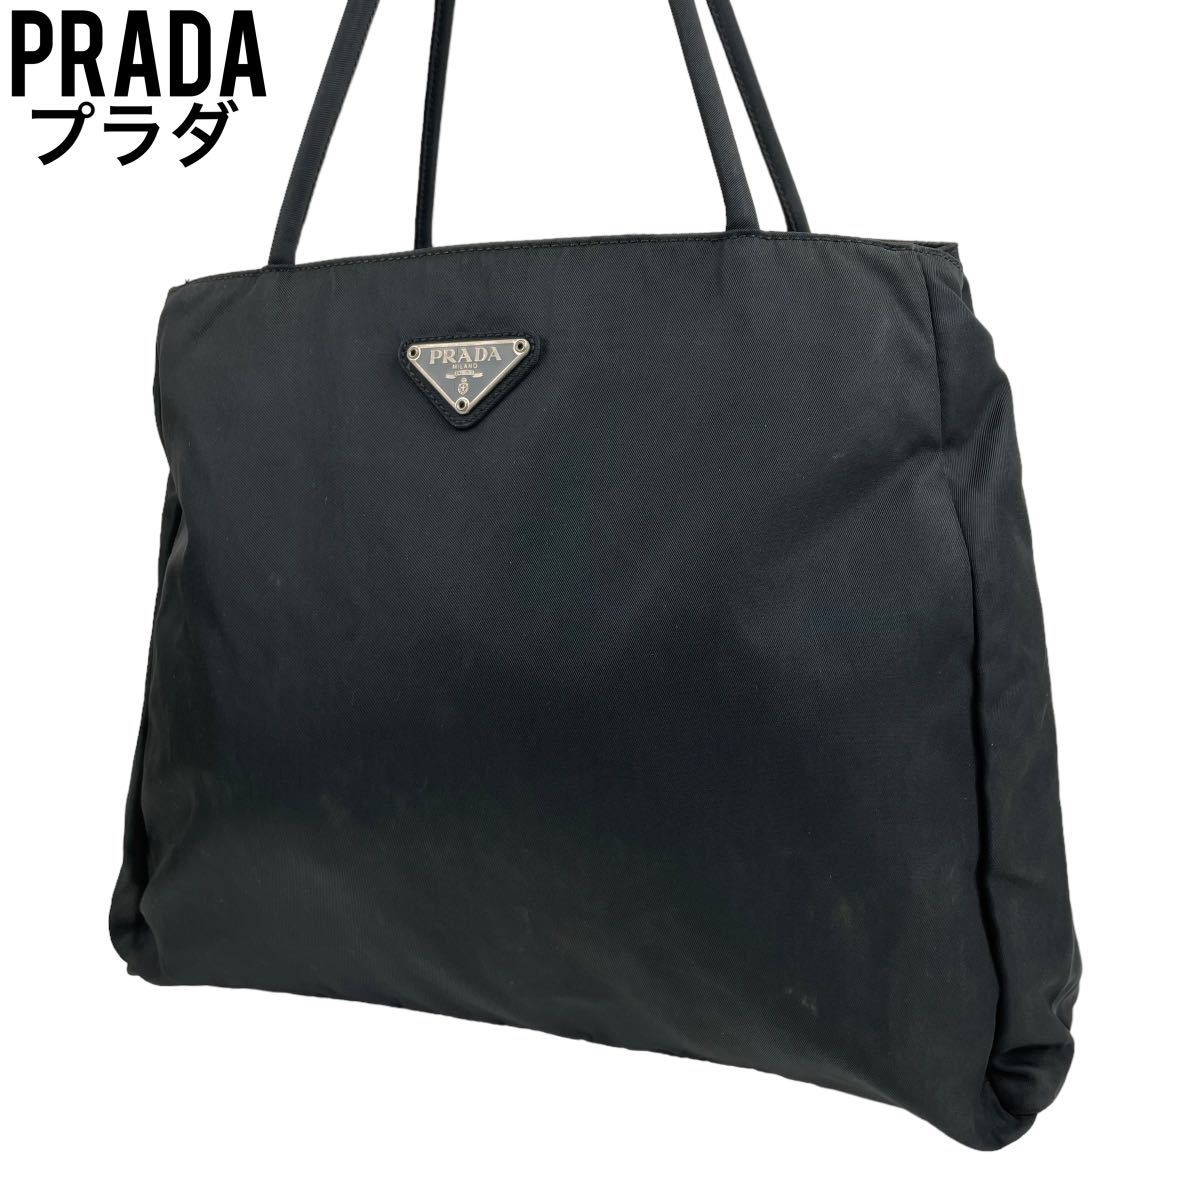 人気大割引 美品 PRADA プラダ ハンドバッグ ナイロン 黒 三角ロゴ